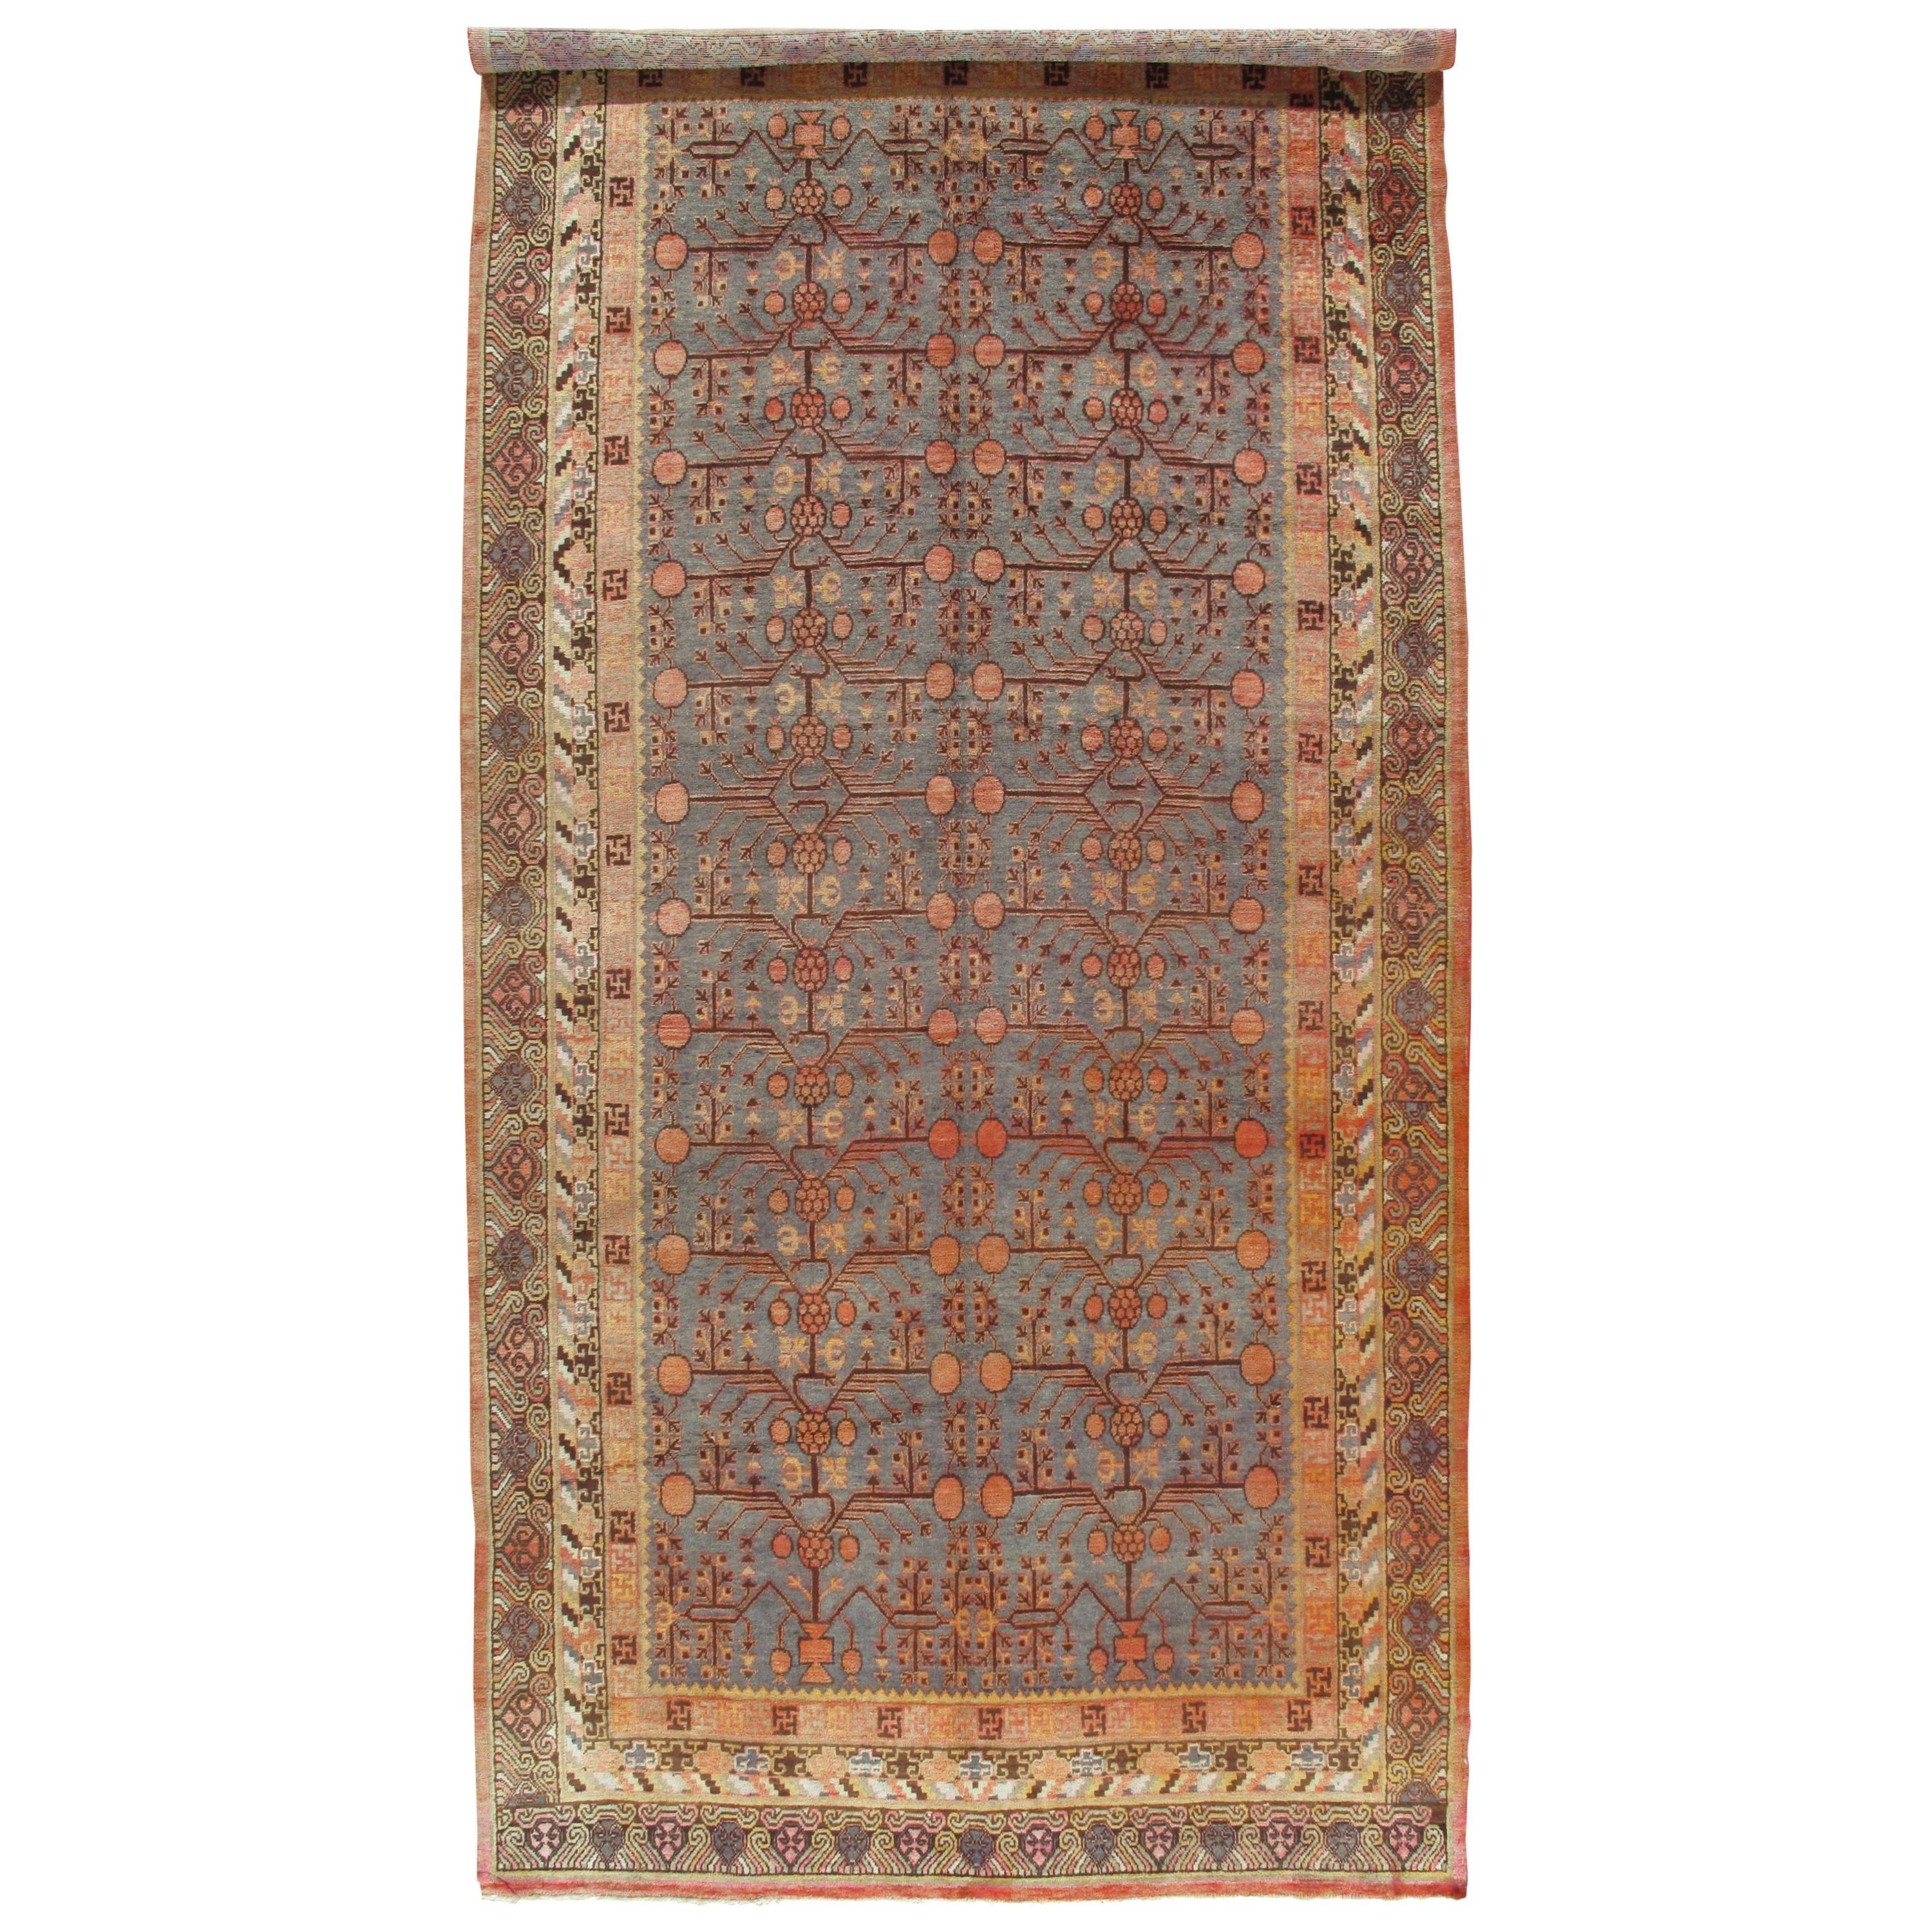 Vintage  Tapis Khotan, tapis oriental fait main, souple résille beige, marron, bleu-gris